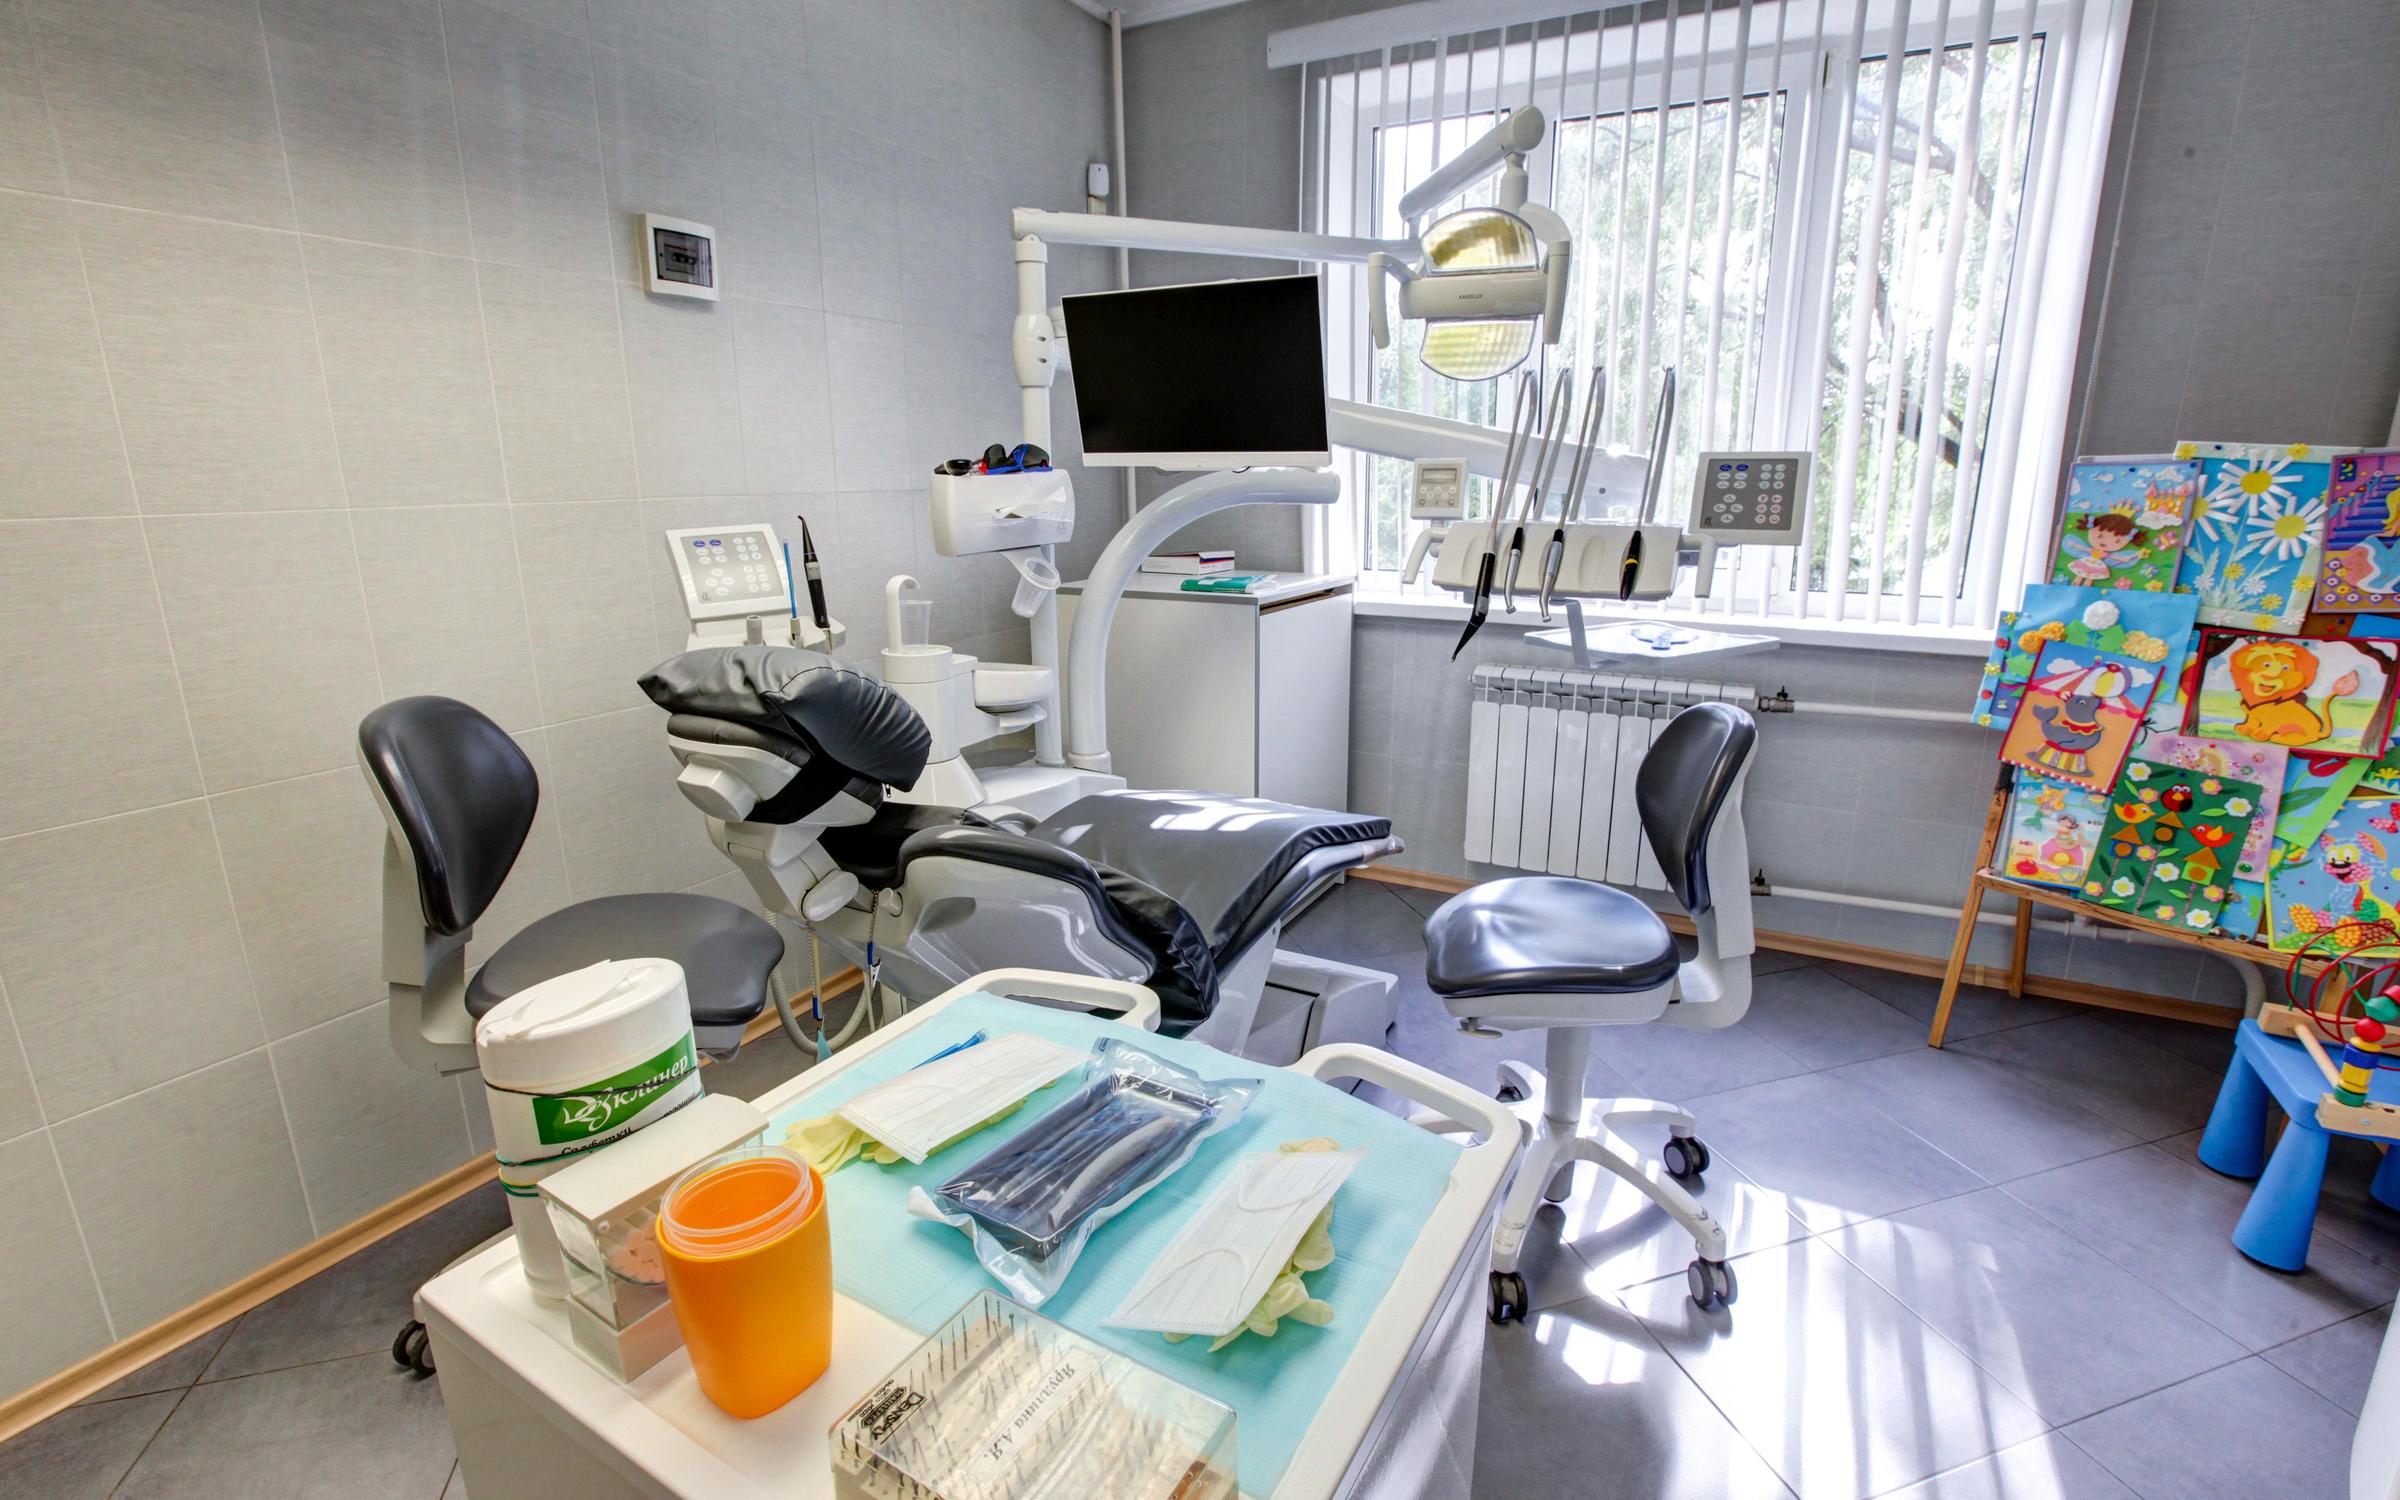 Стоматология на ясеневой. Стоматология Дент сервис в Ясенево. Вильнюсская 13 стоматология Дент сервис. Дента сервис стоматология. Стоматология Ясенево.